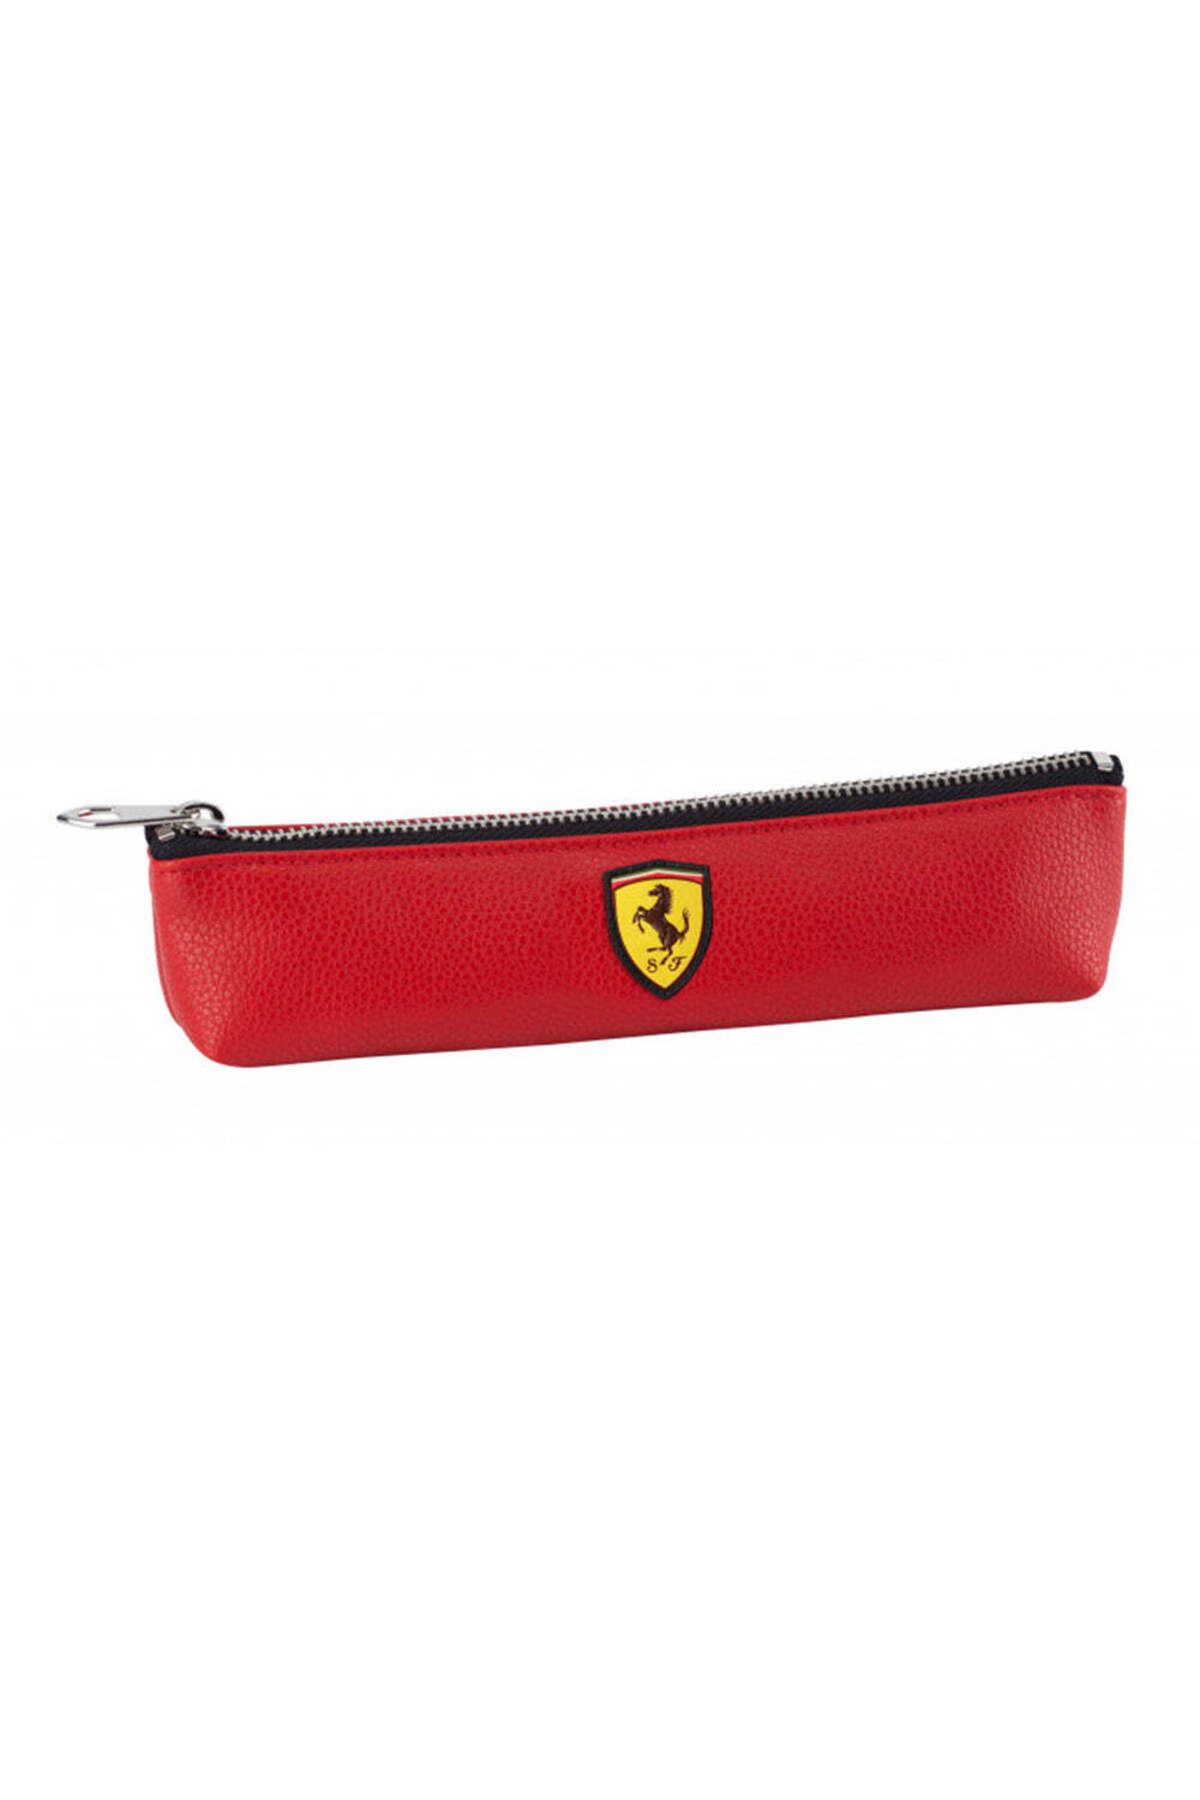 Ferrari Deri Kalemlik Scuderia - Kırmızı